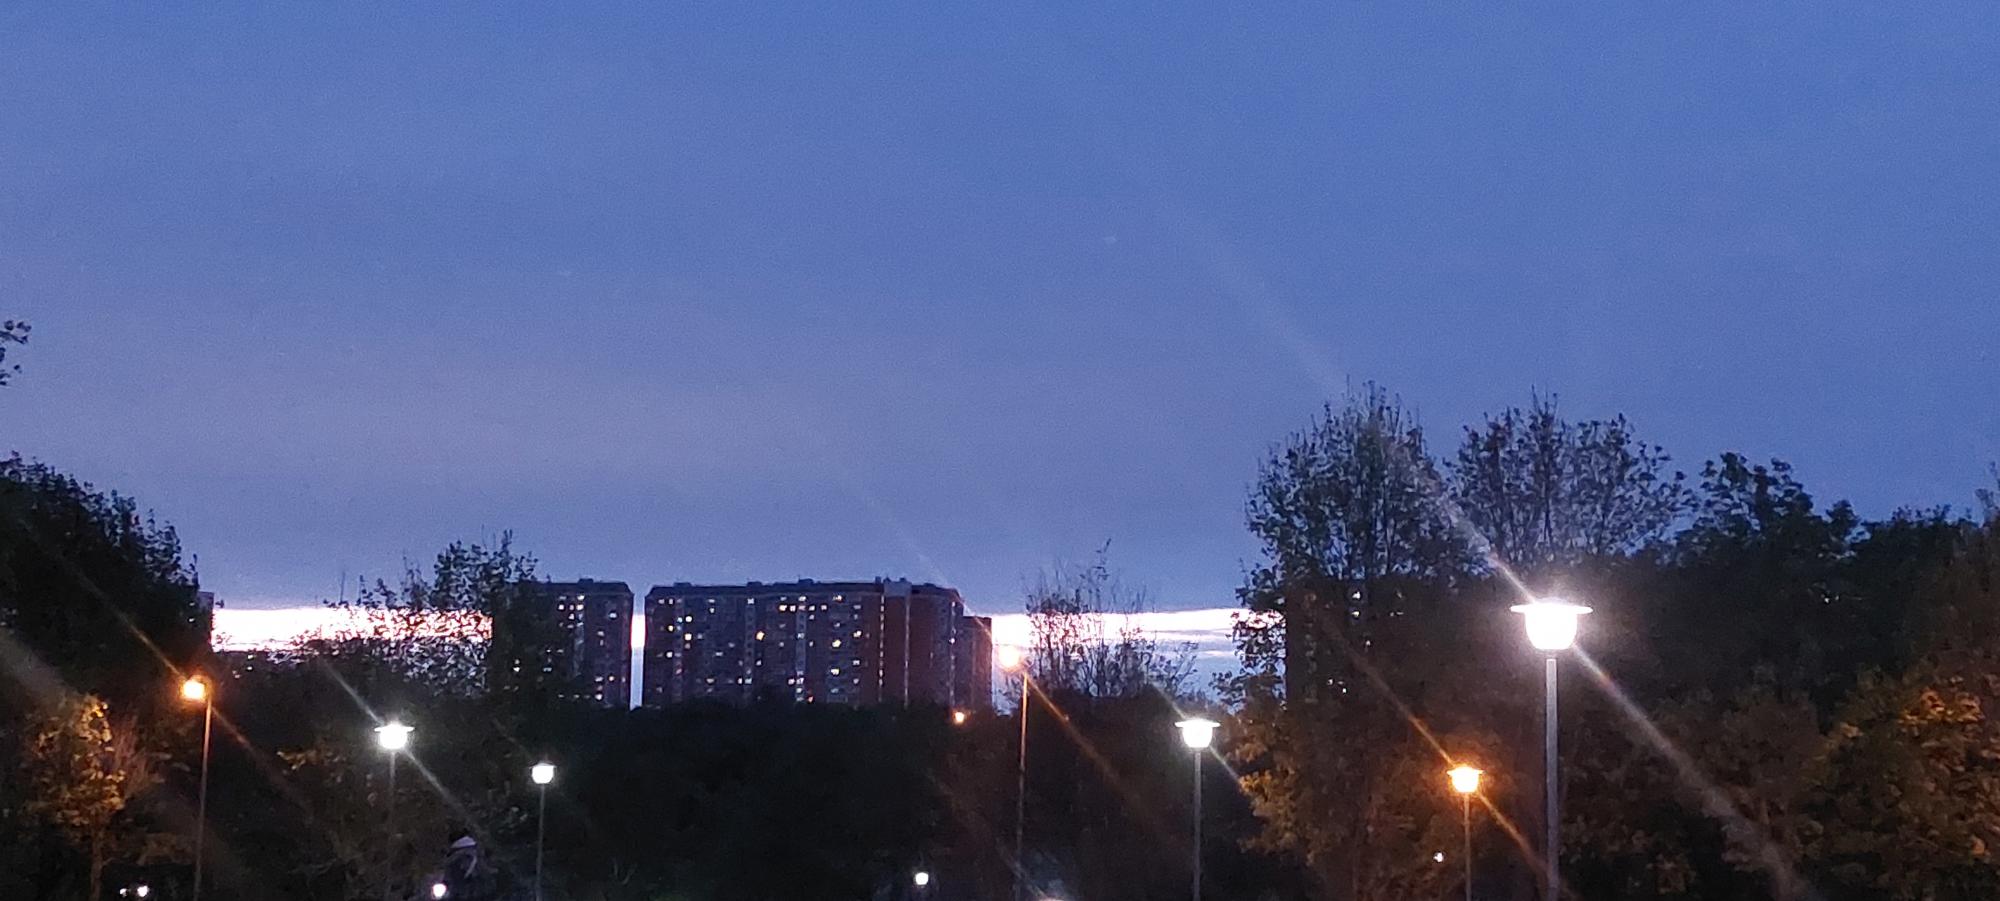 Такой закат сегодня в Москве, светлая полоса нетипична